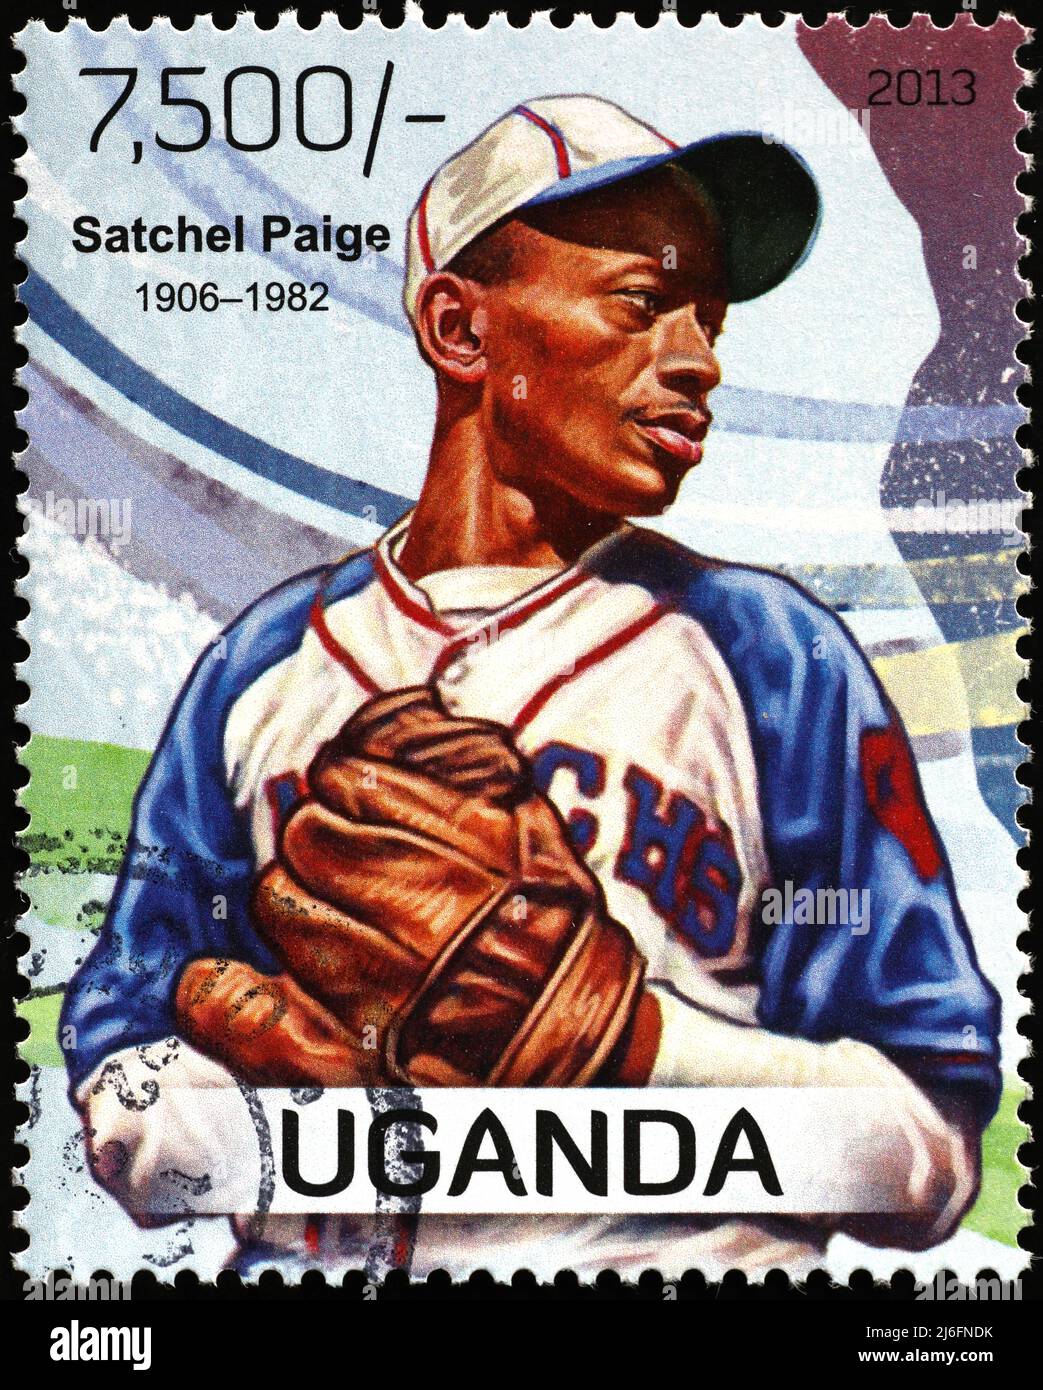 Baseballsieger Satchel Paige auf Briefmarke Stockfoto